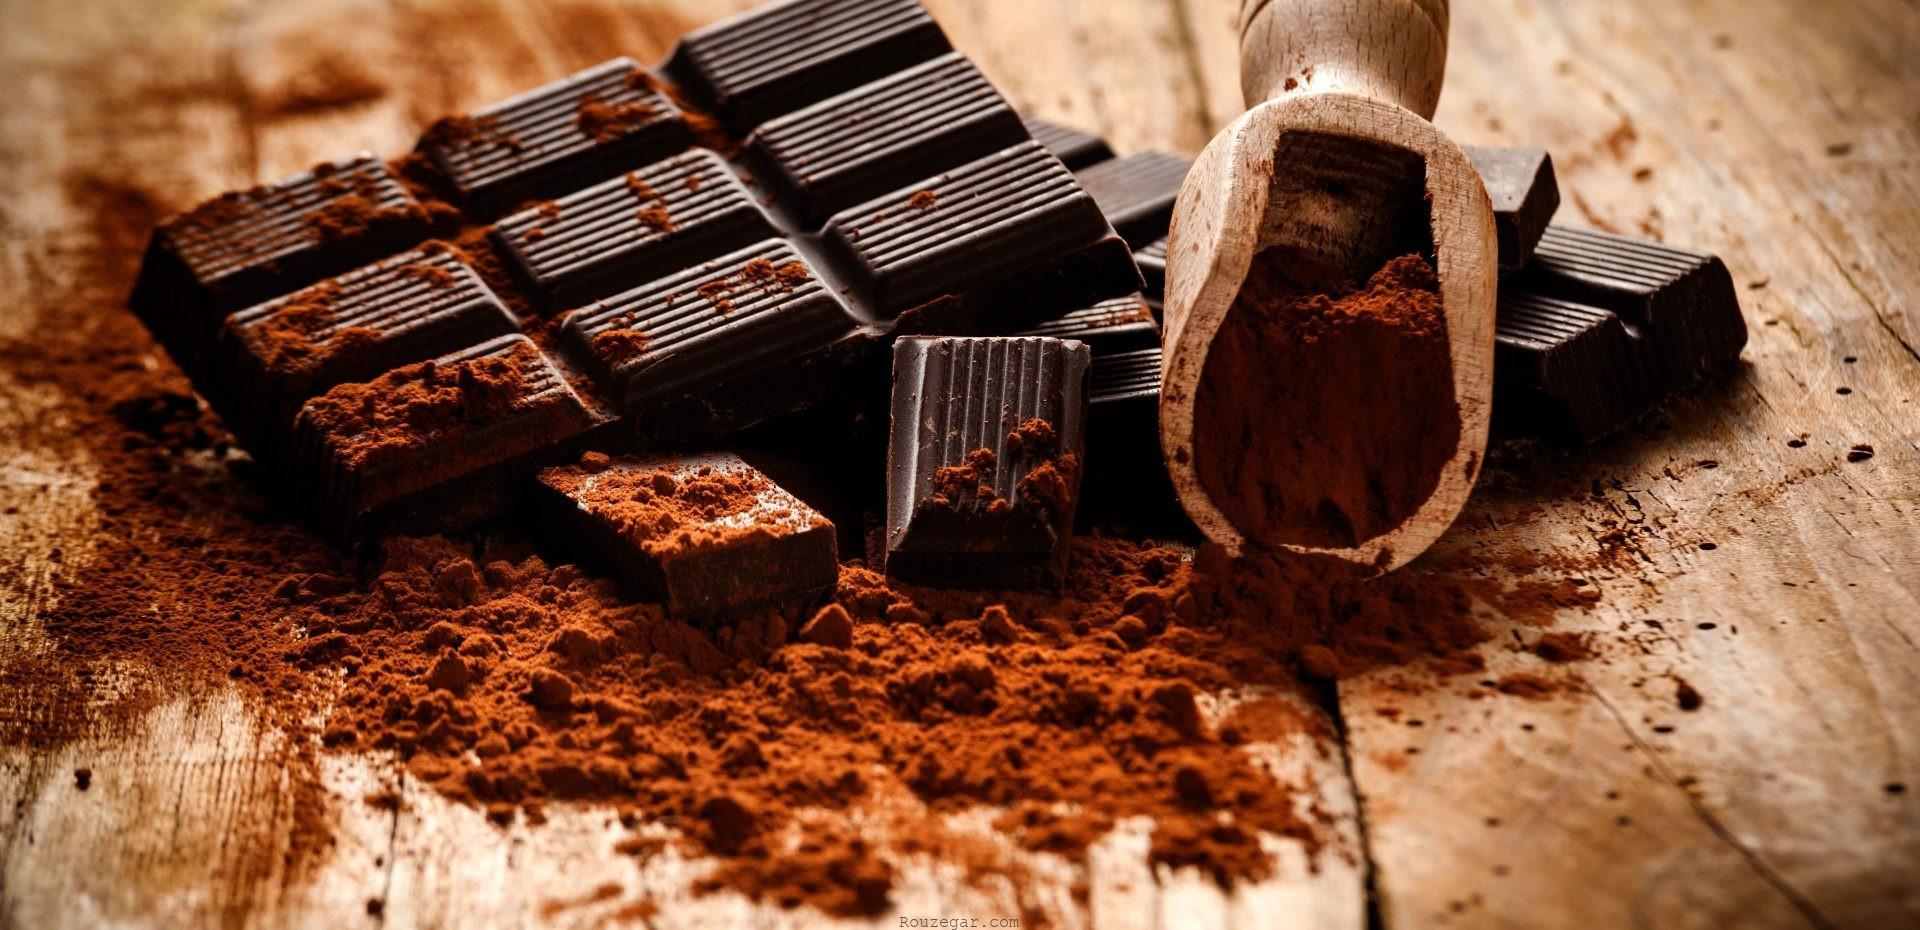 ارزش غذایی و مواد موجود در شکلات تلخ